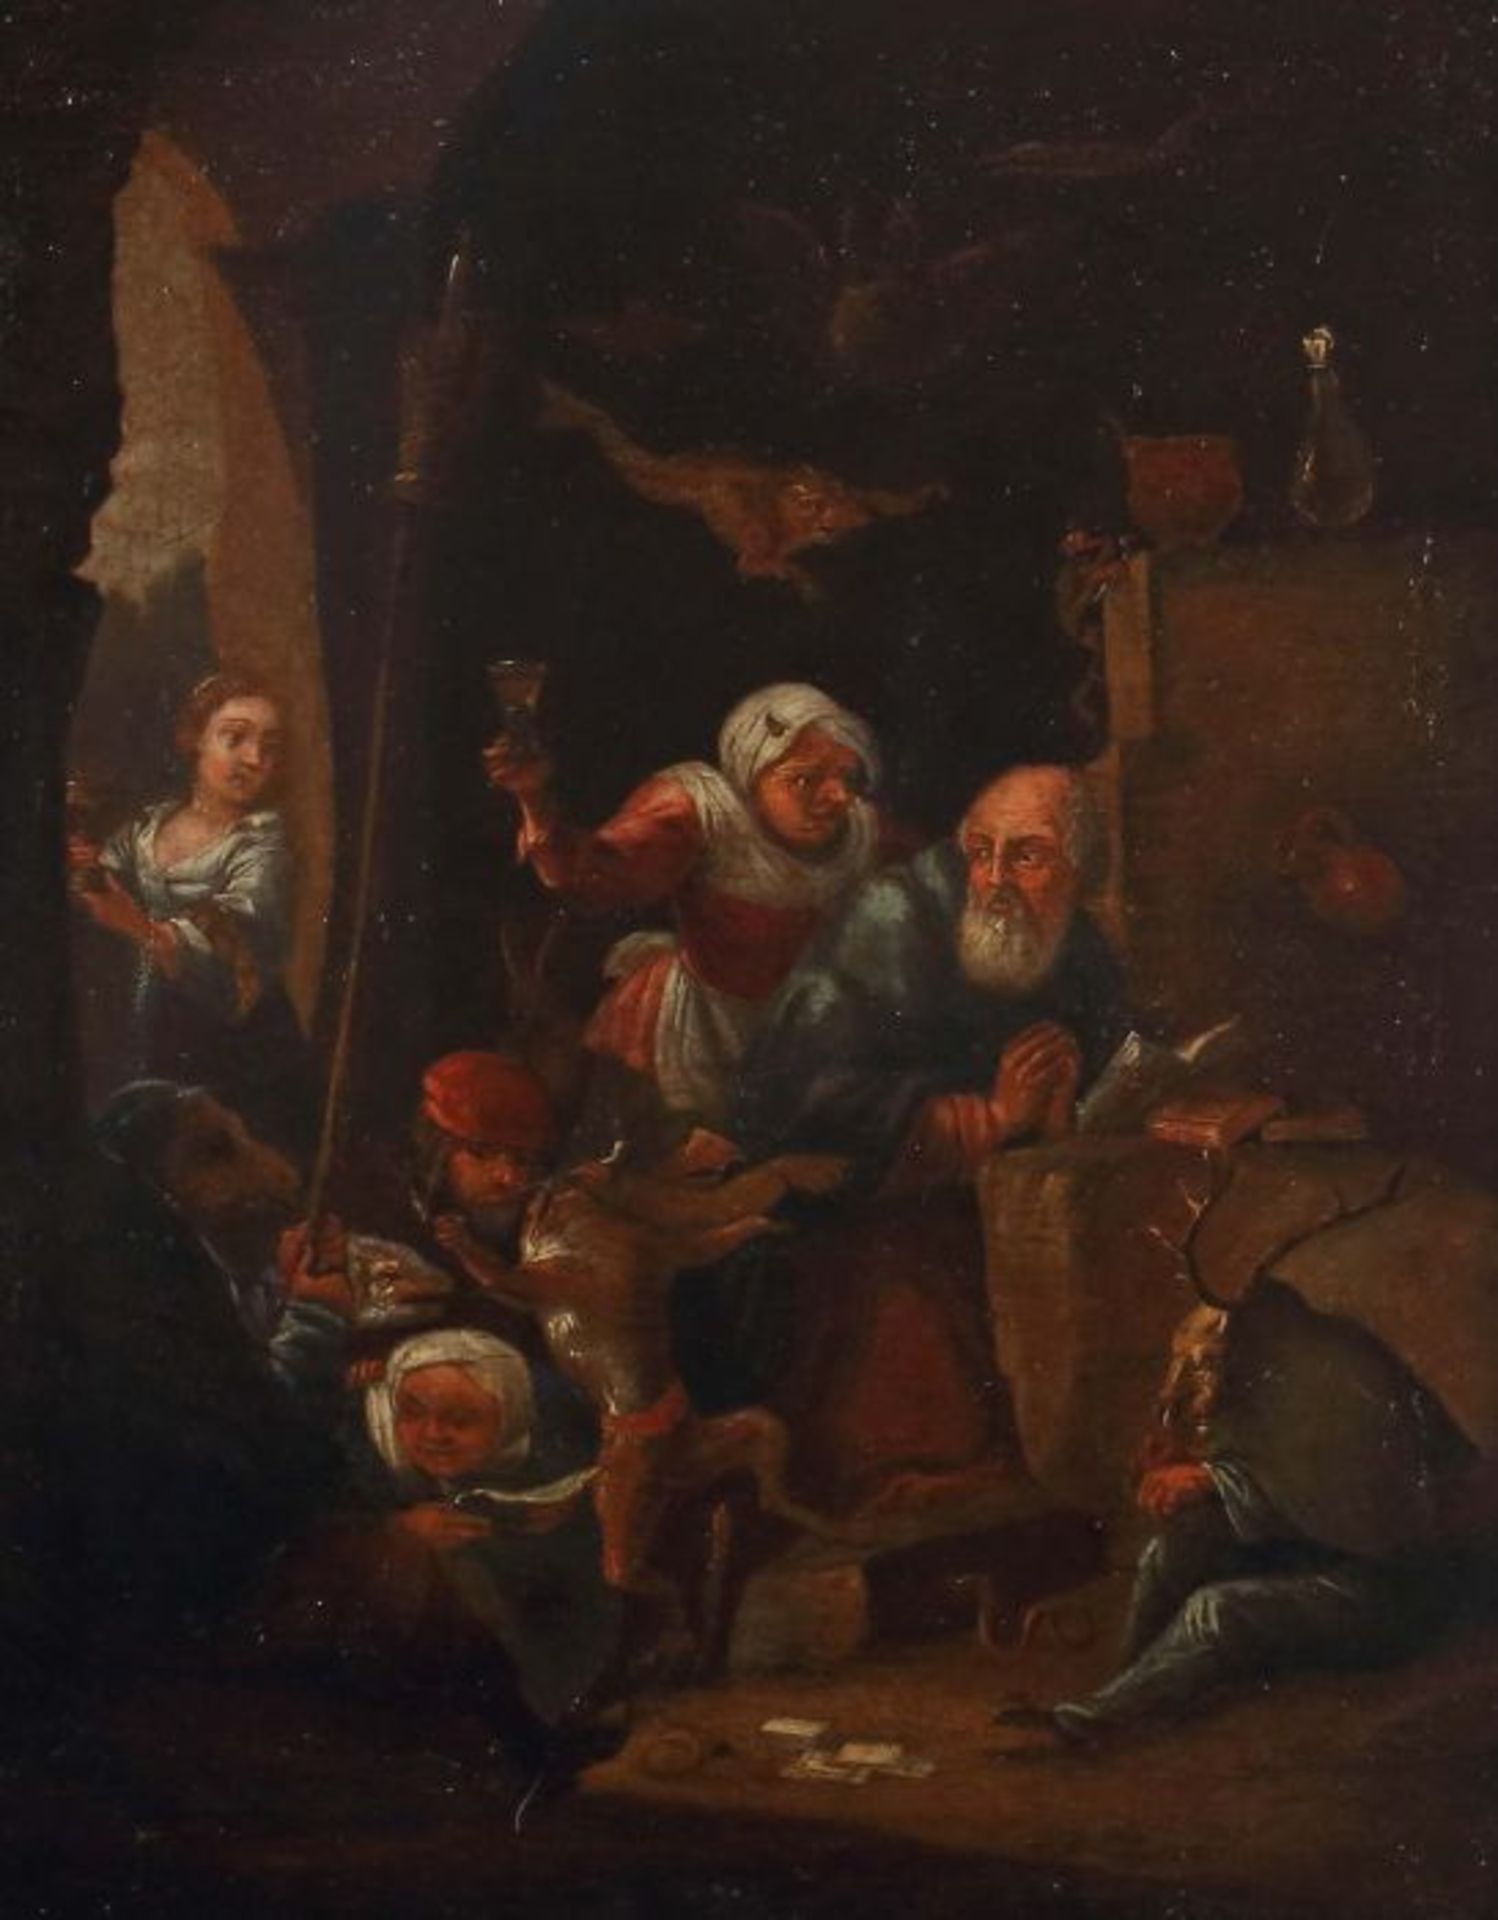 Flämischer Maler des 16./17. Jh"Versuchung des heiligen Antonius", mystische Szene mit dem